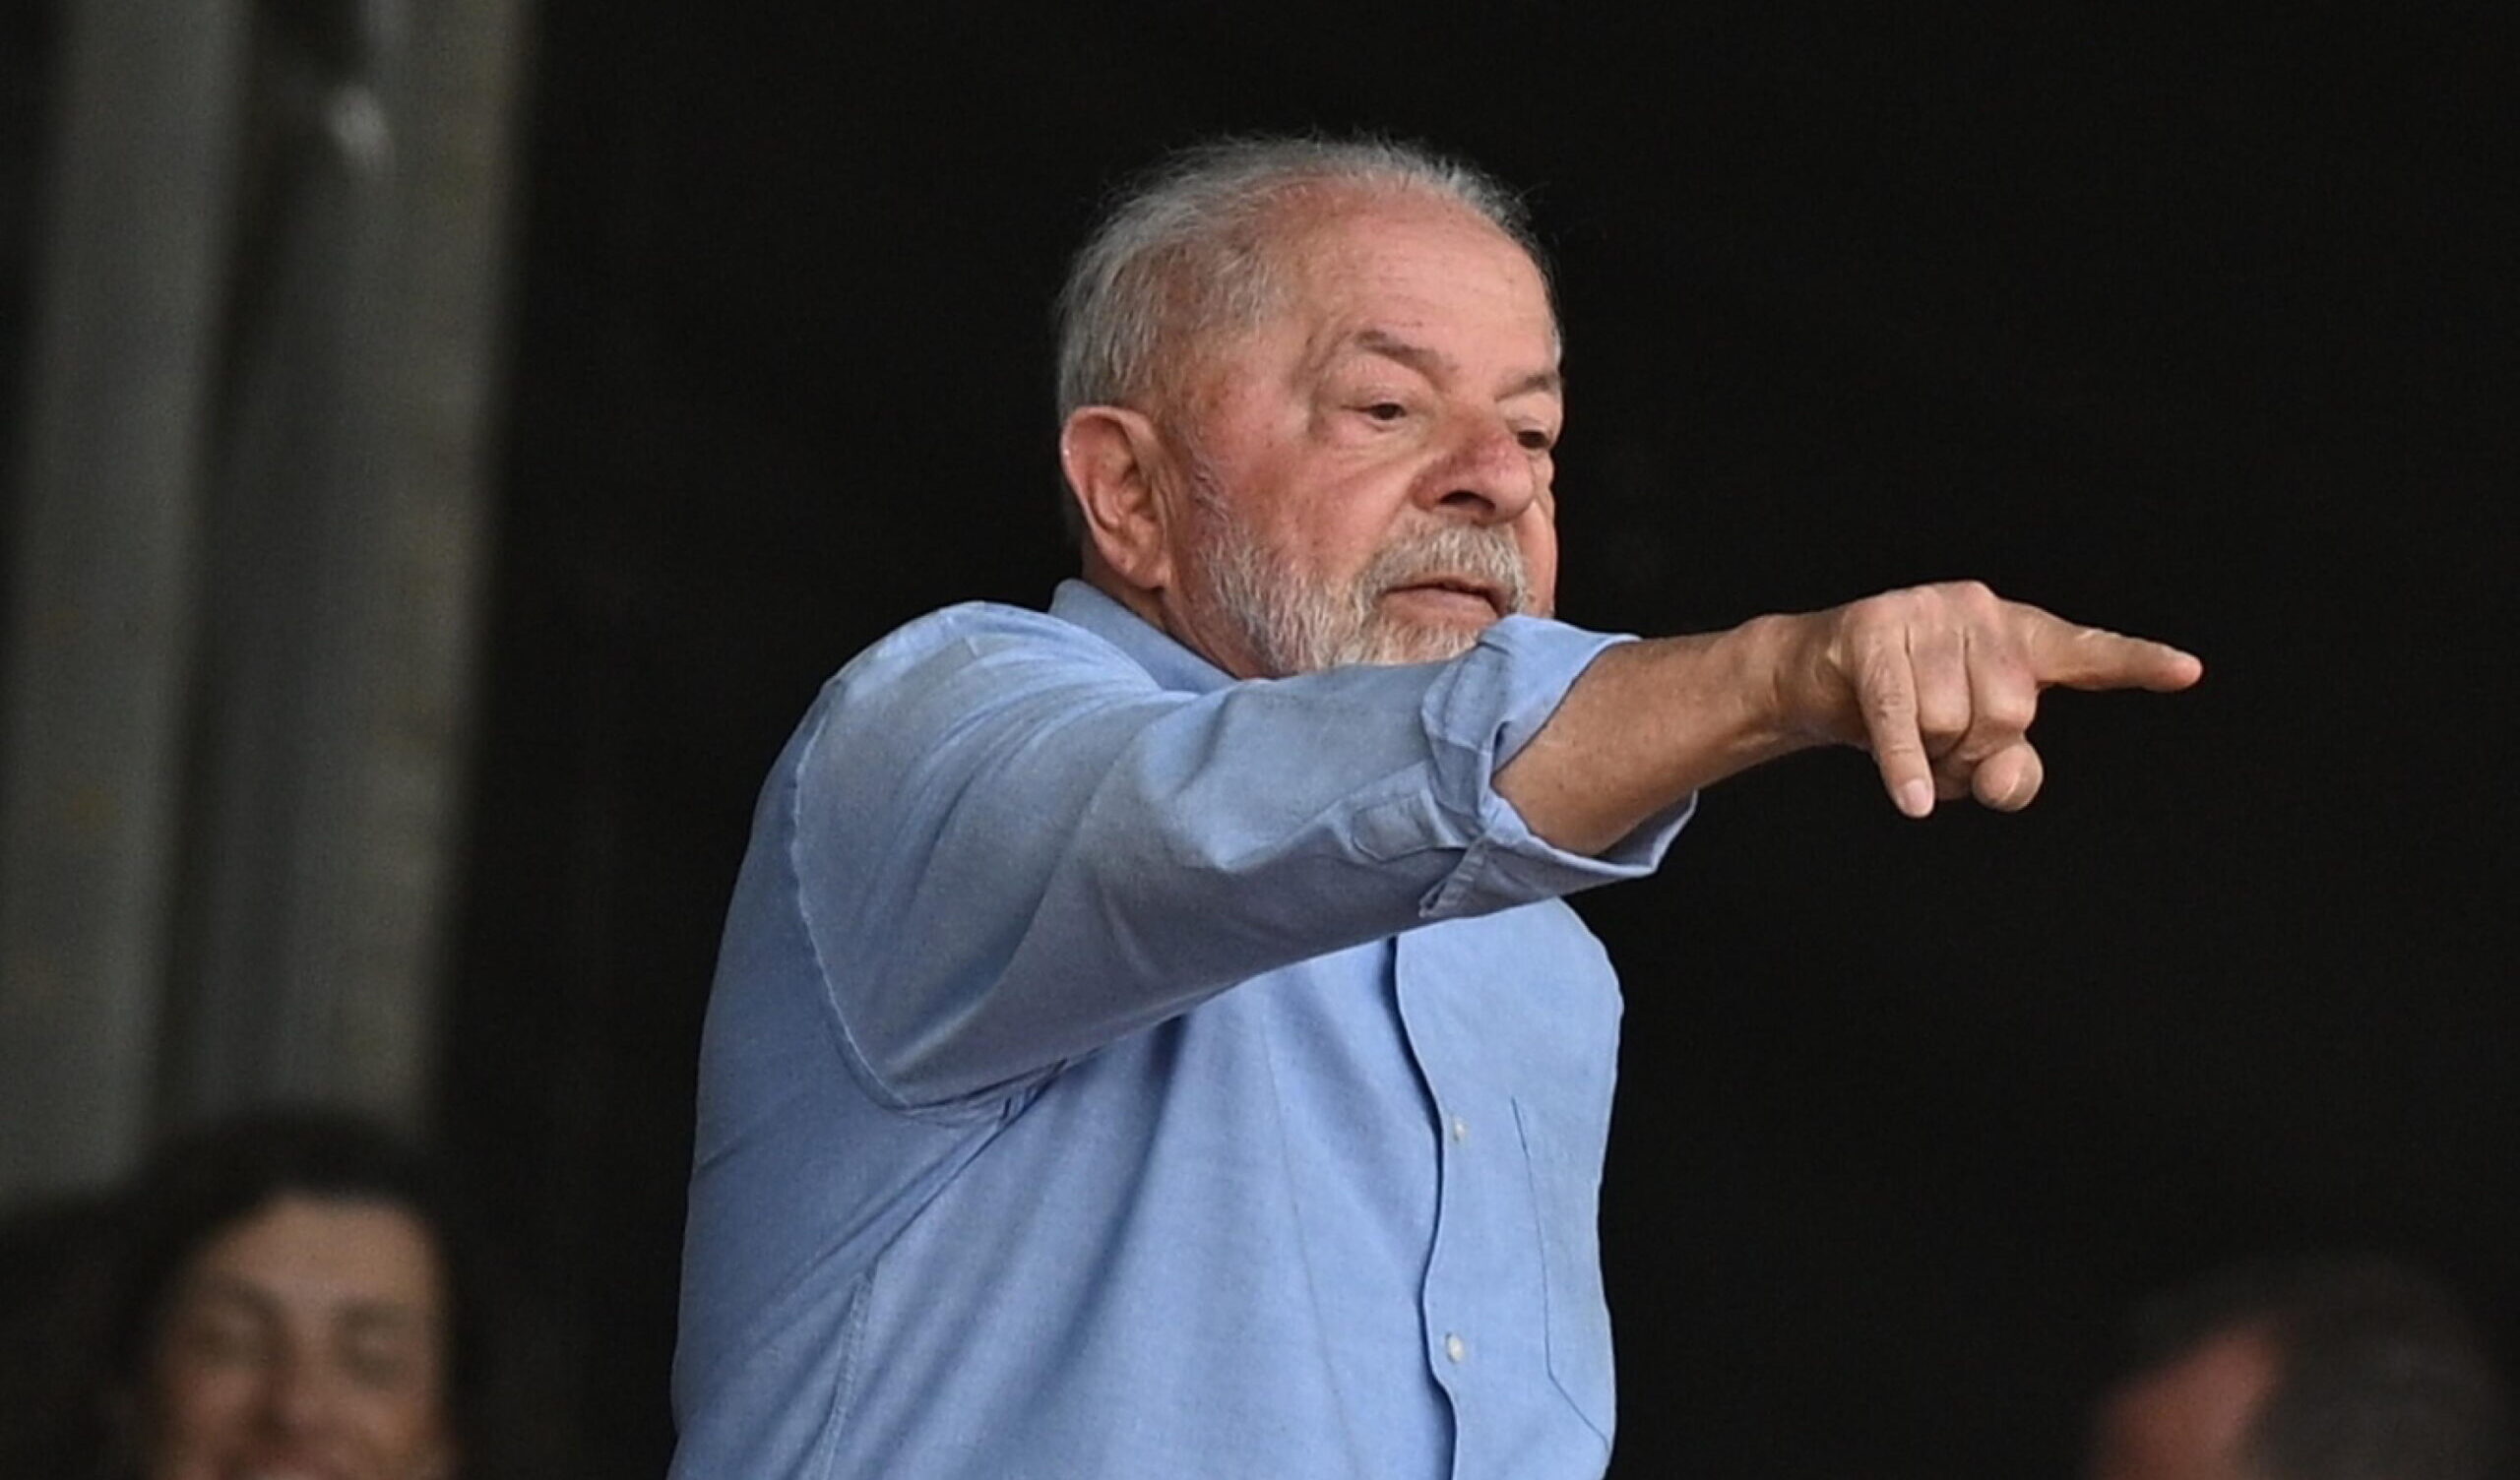 Sondaggi politici: il tasso di approvazione per Lula è in calo (ma più alto di Bolsonaro)